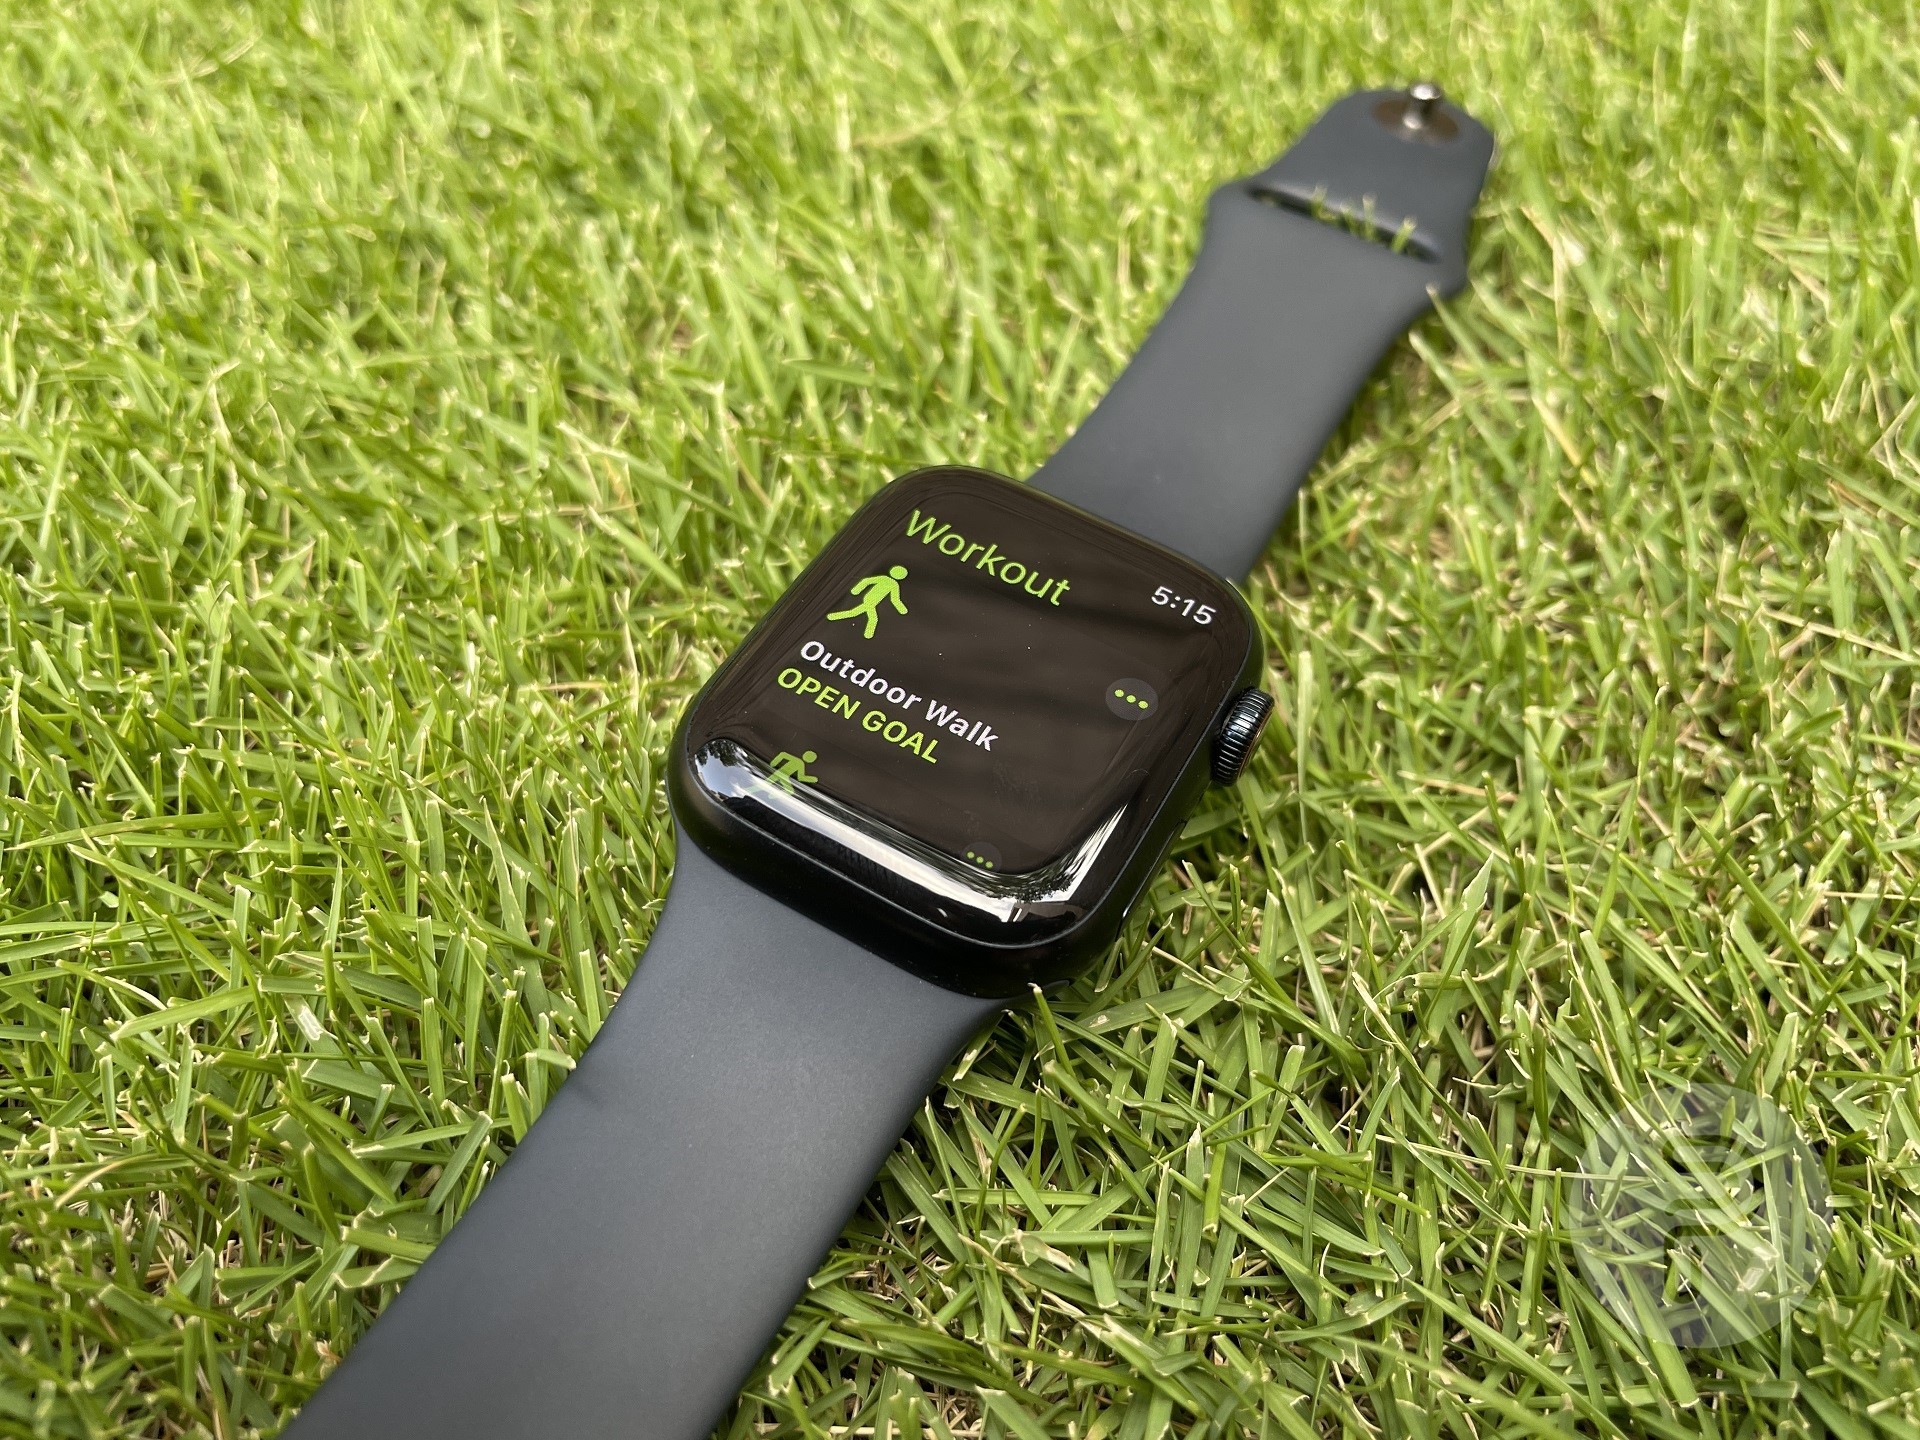 montre apple placée sur la pelouse avec entraînement de marche en plein air à l'écran